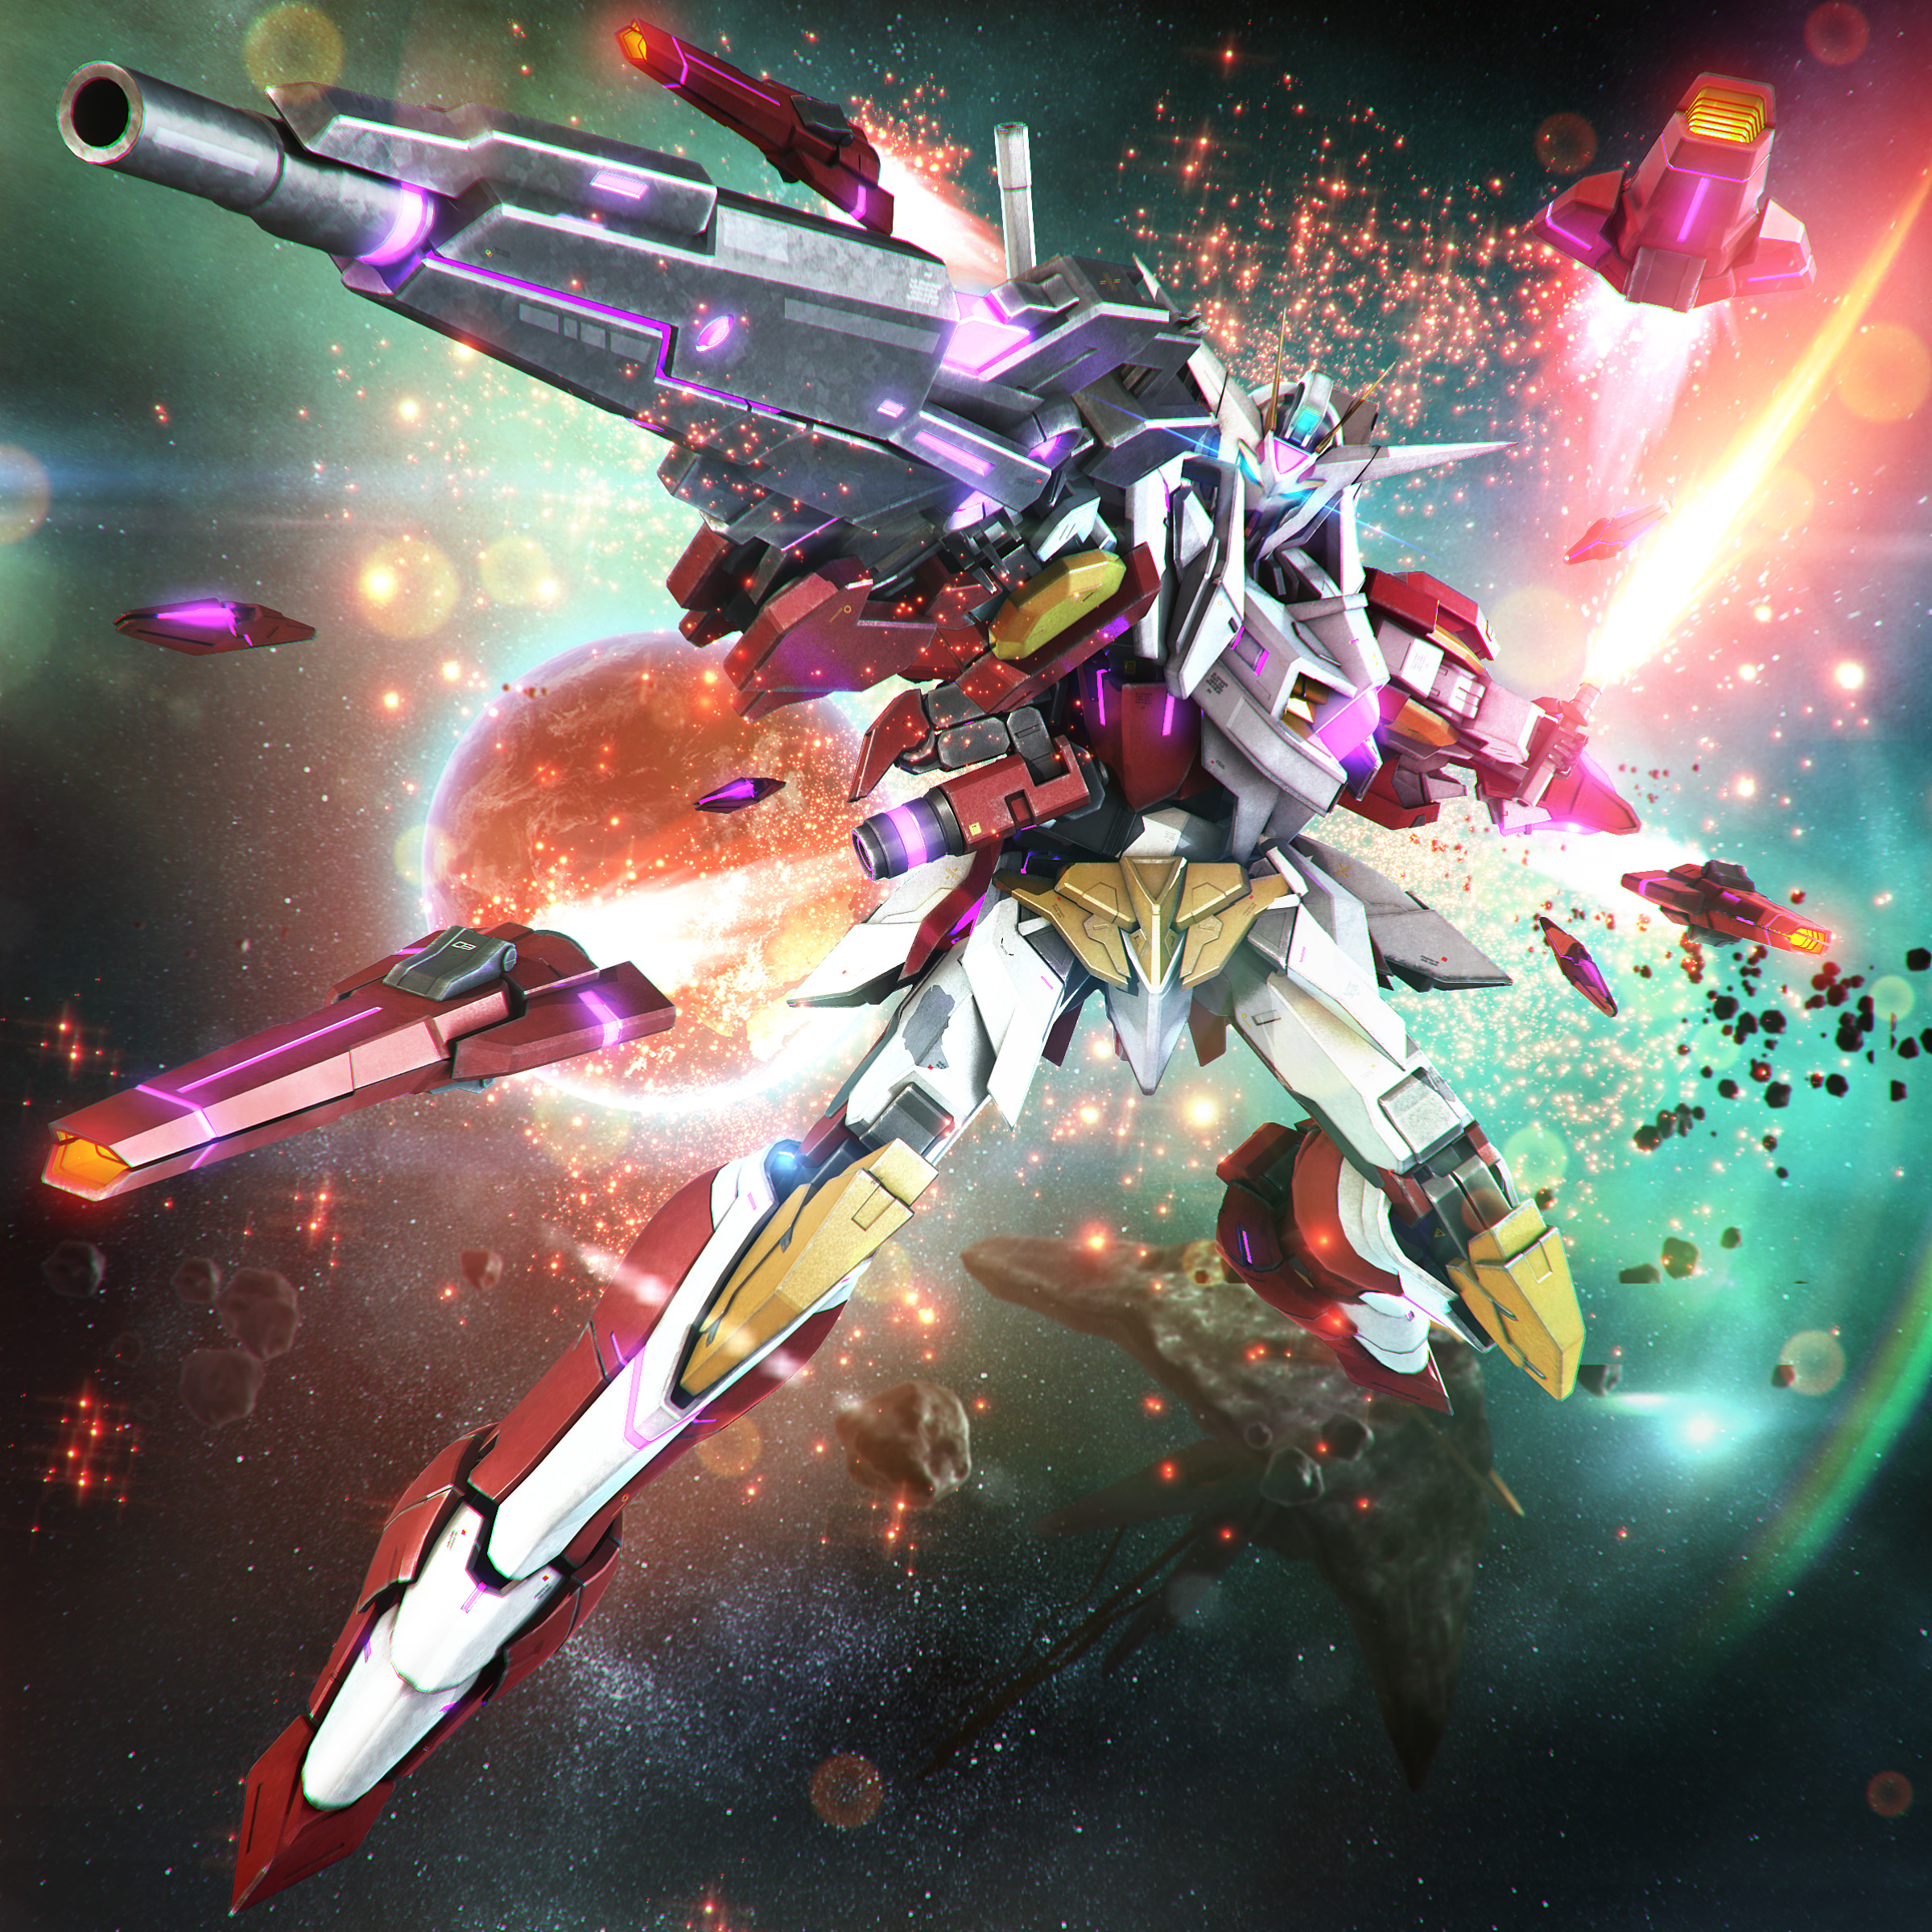 Anime 2400x2400 anime mechs Gundam Super Robot Taisen Mobile Suit Gundam 00 Reborns Gundam artwork digital art fan art